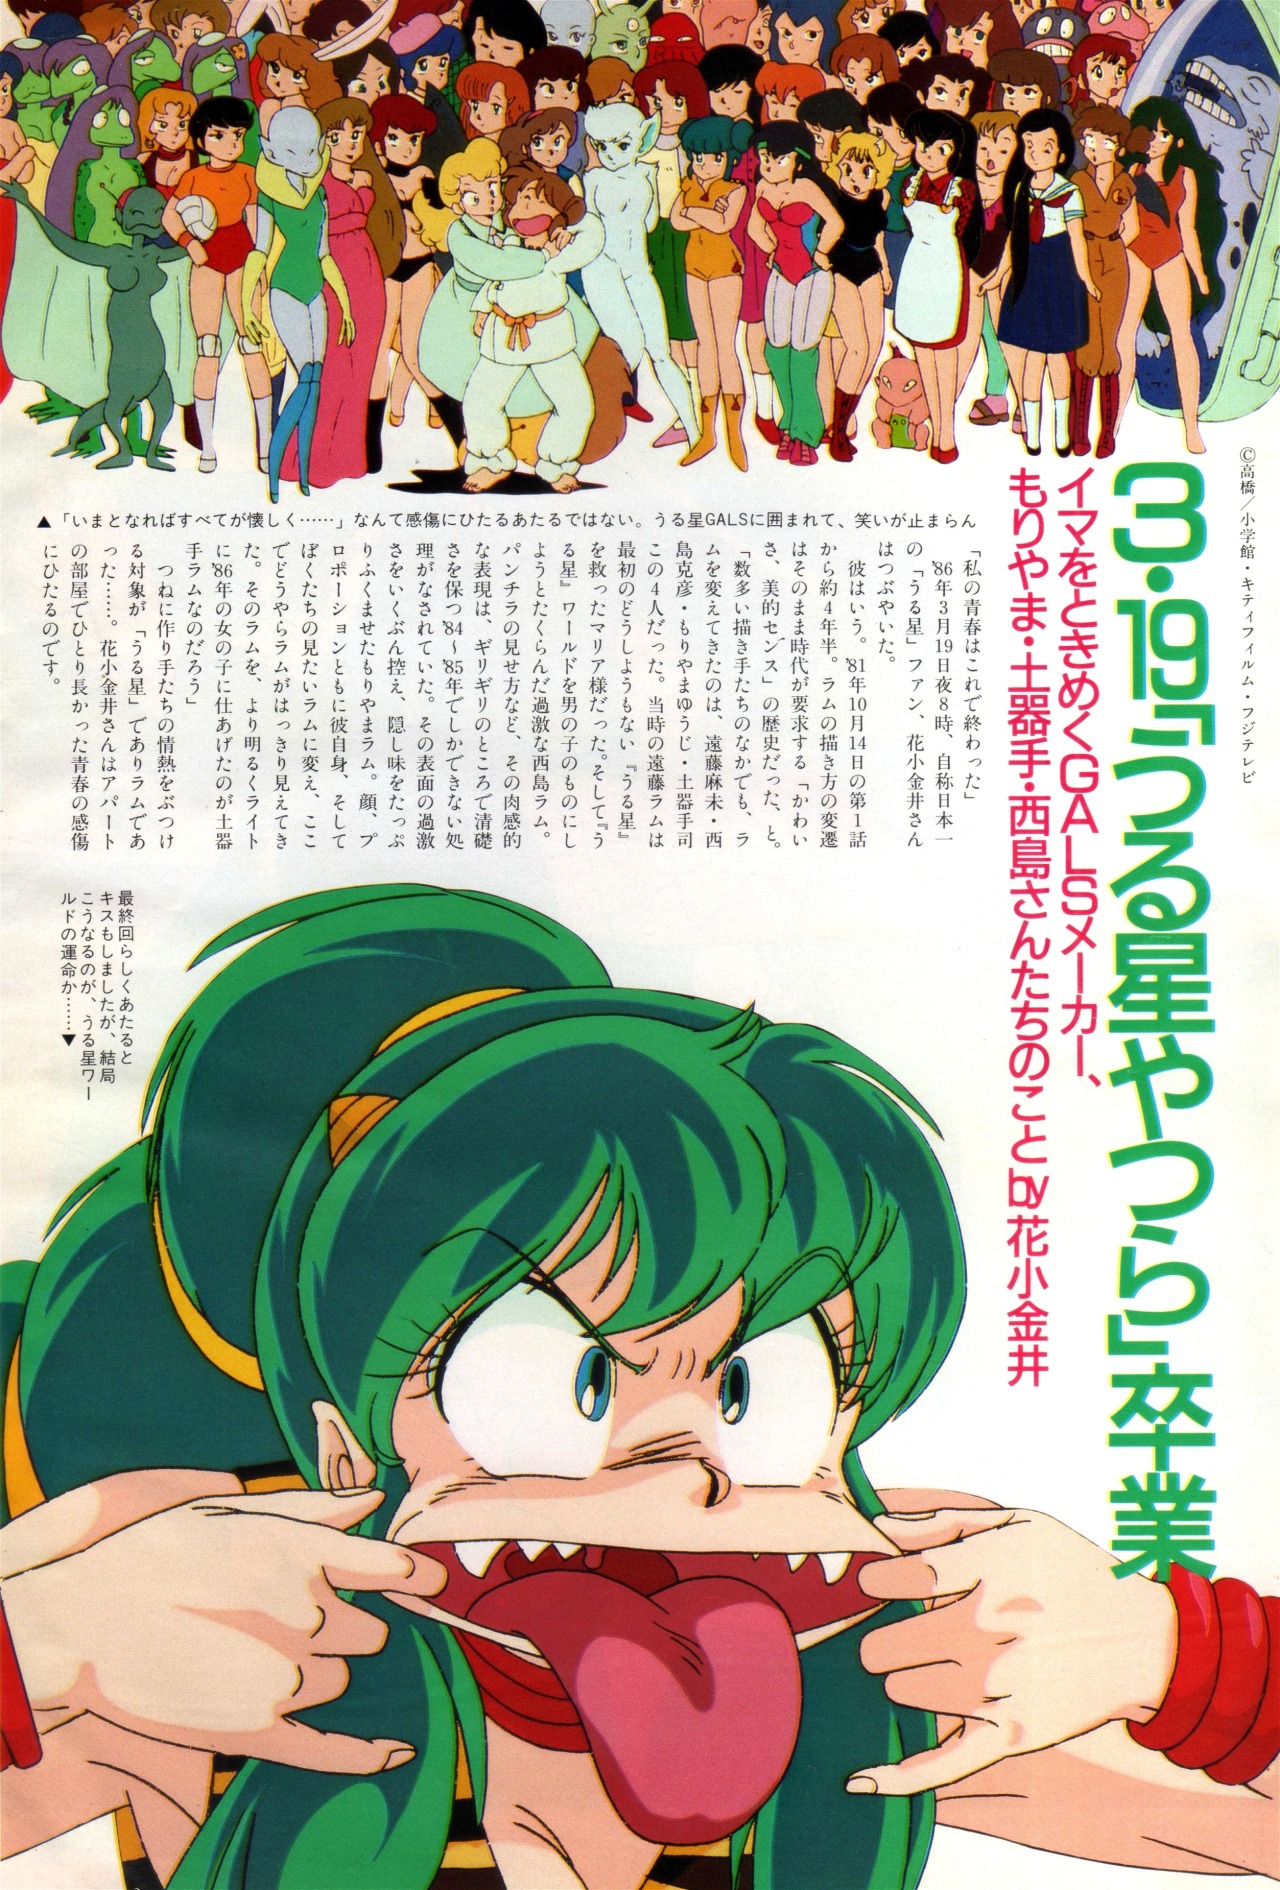 Anim Archive Urusei Yatsura Animage Magazine 05 1986